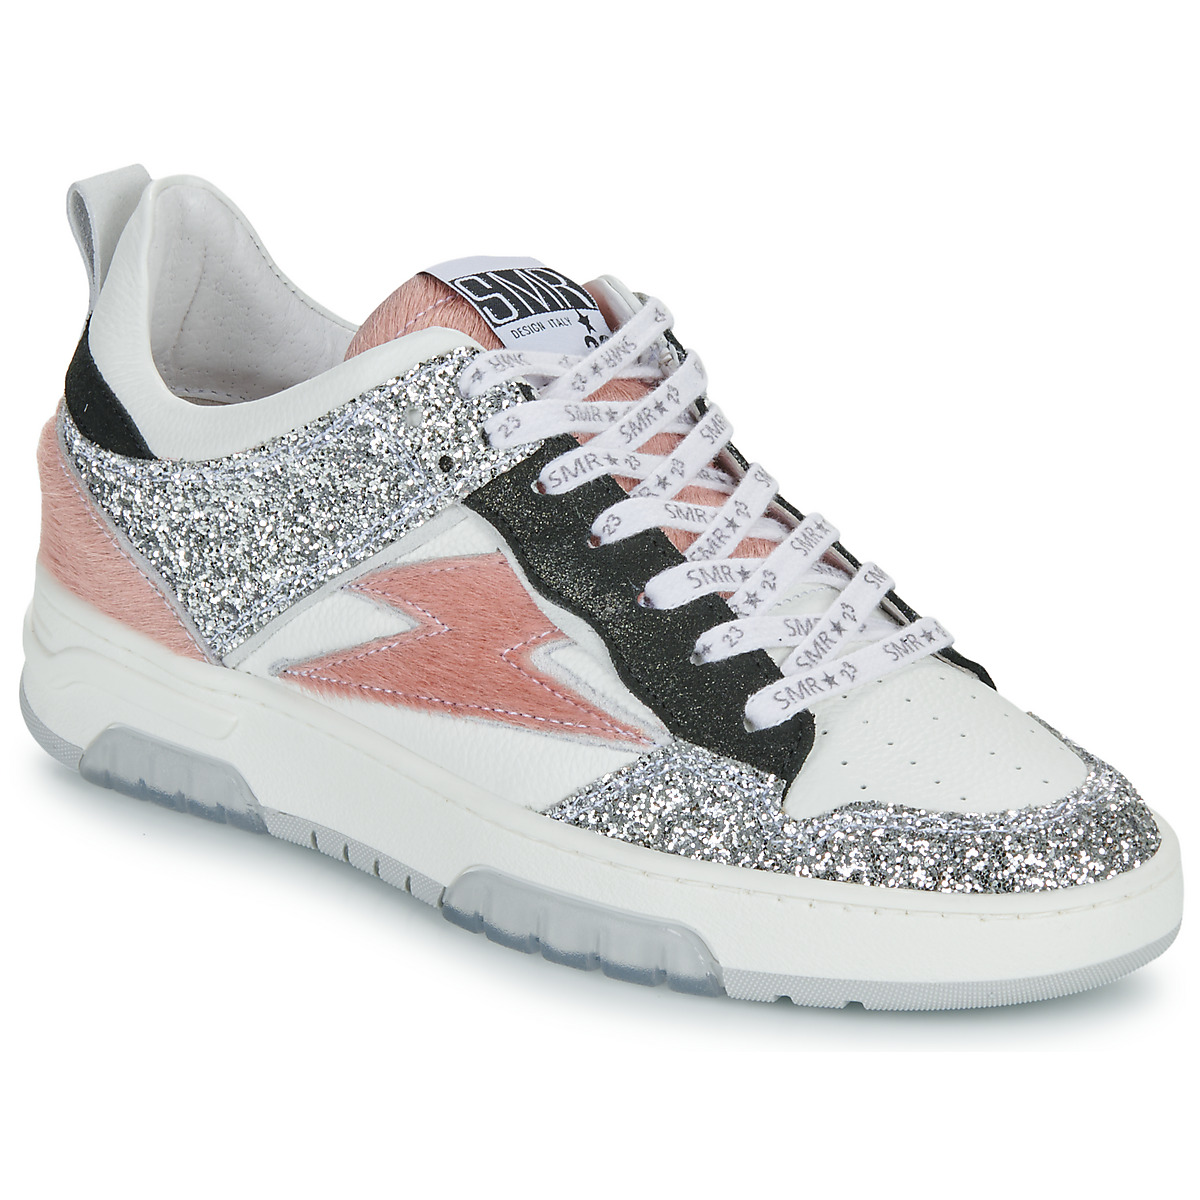 Παπούτσια Γυναίκα Χαμηλά Sneakers Semerdjian CHITA Άσπρο / Ροζ / Argenté